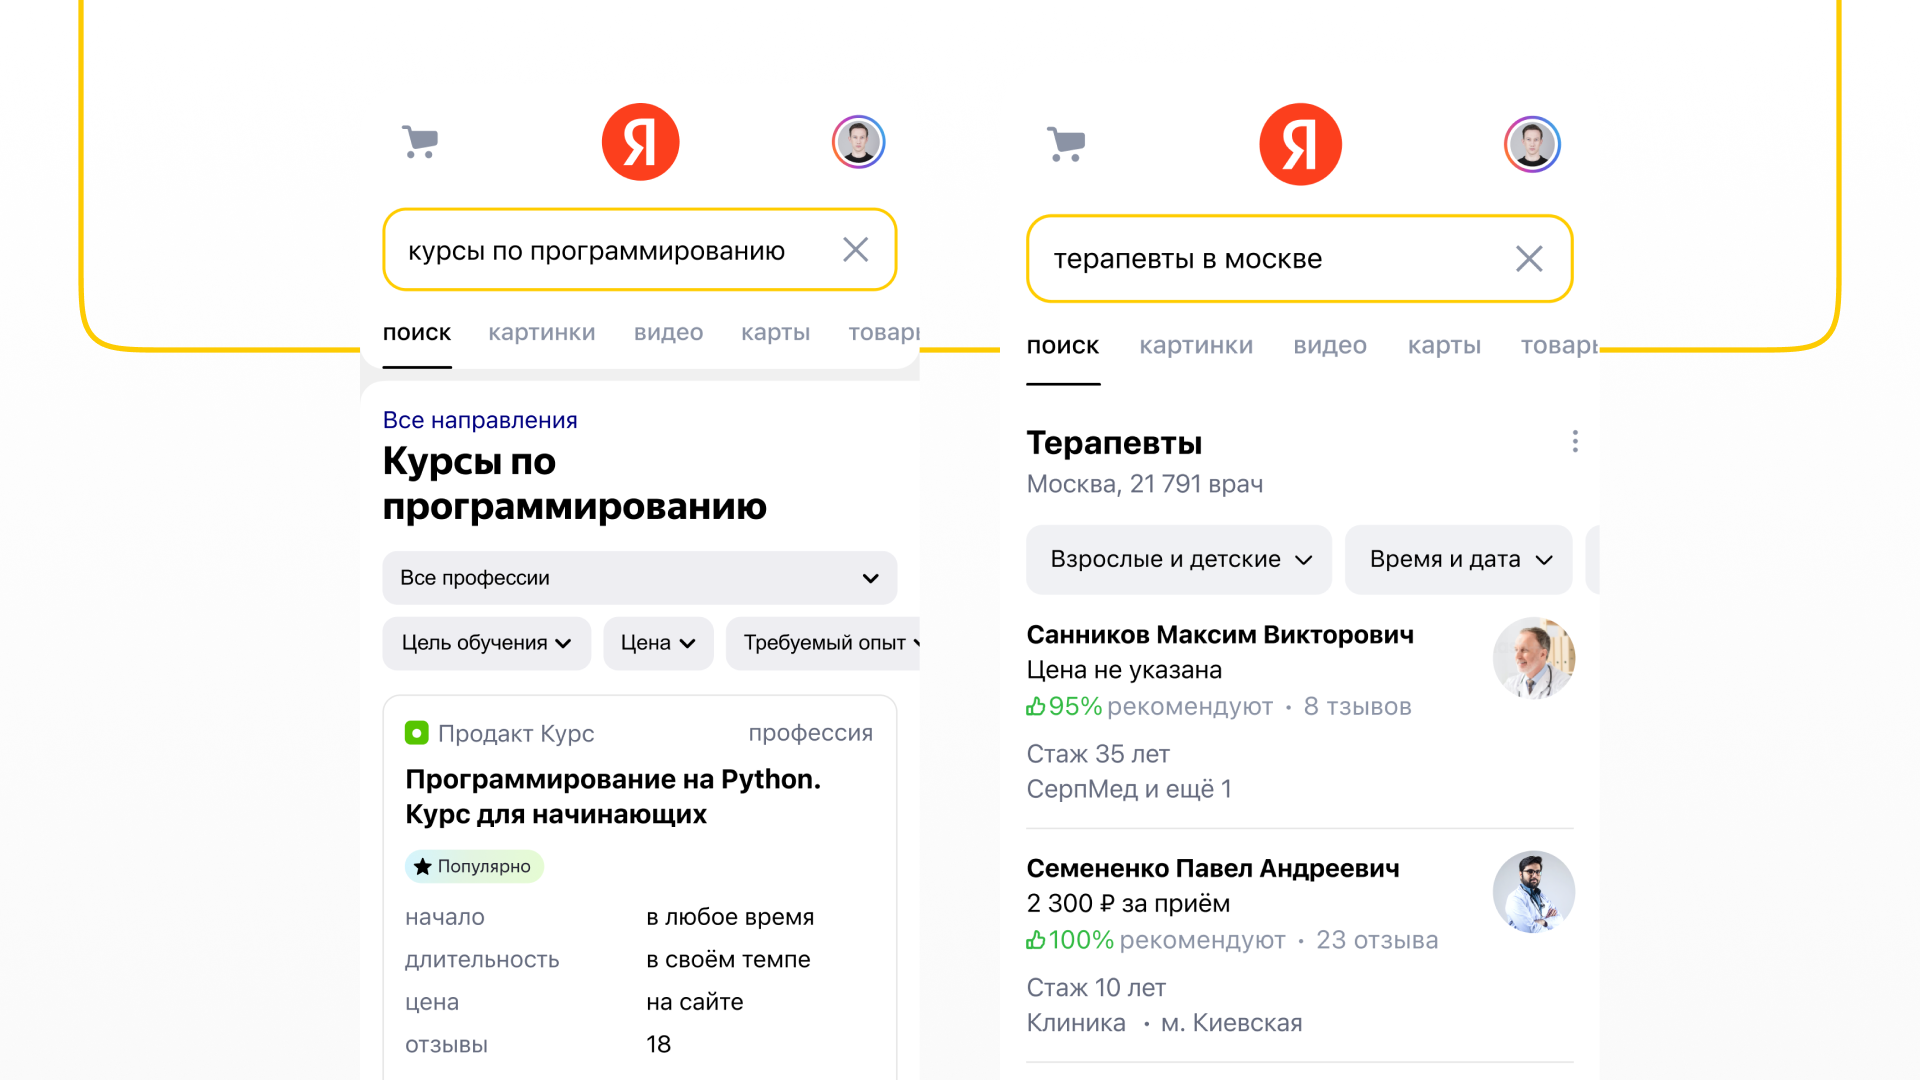 Яндекс представил новую версию поиска - Y2